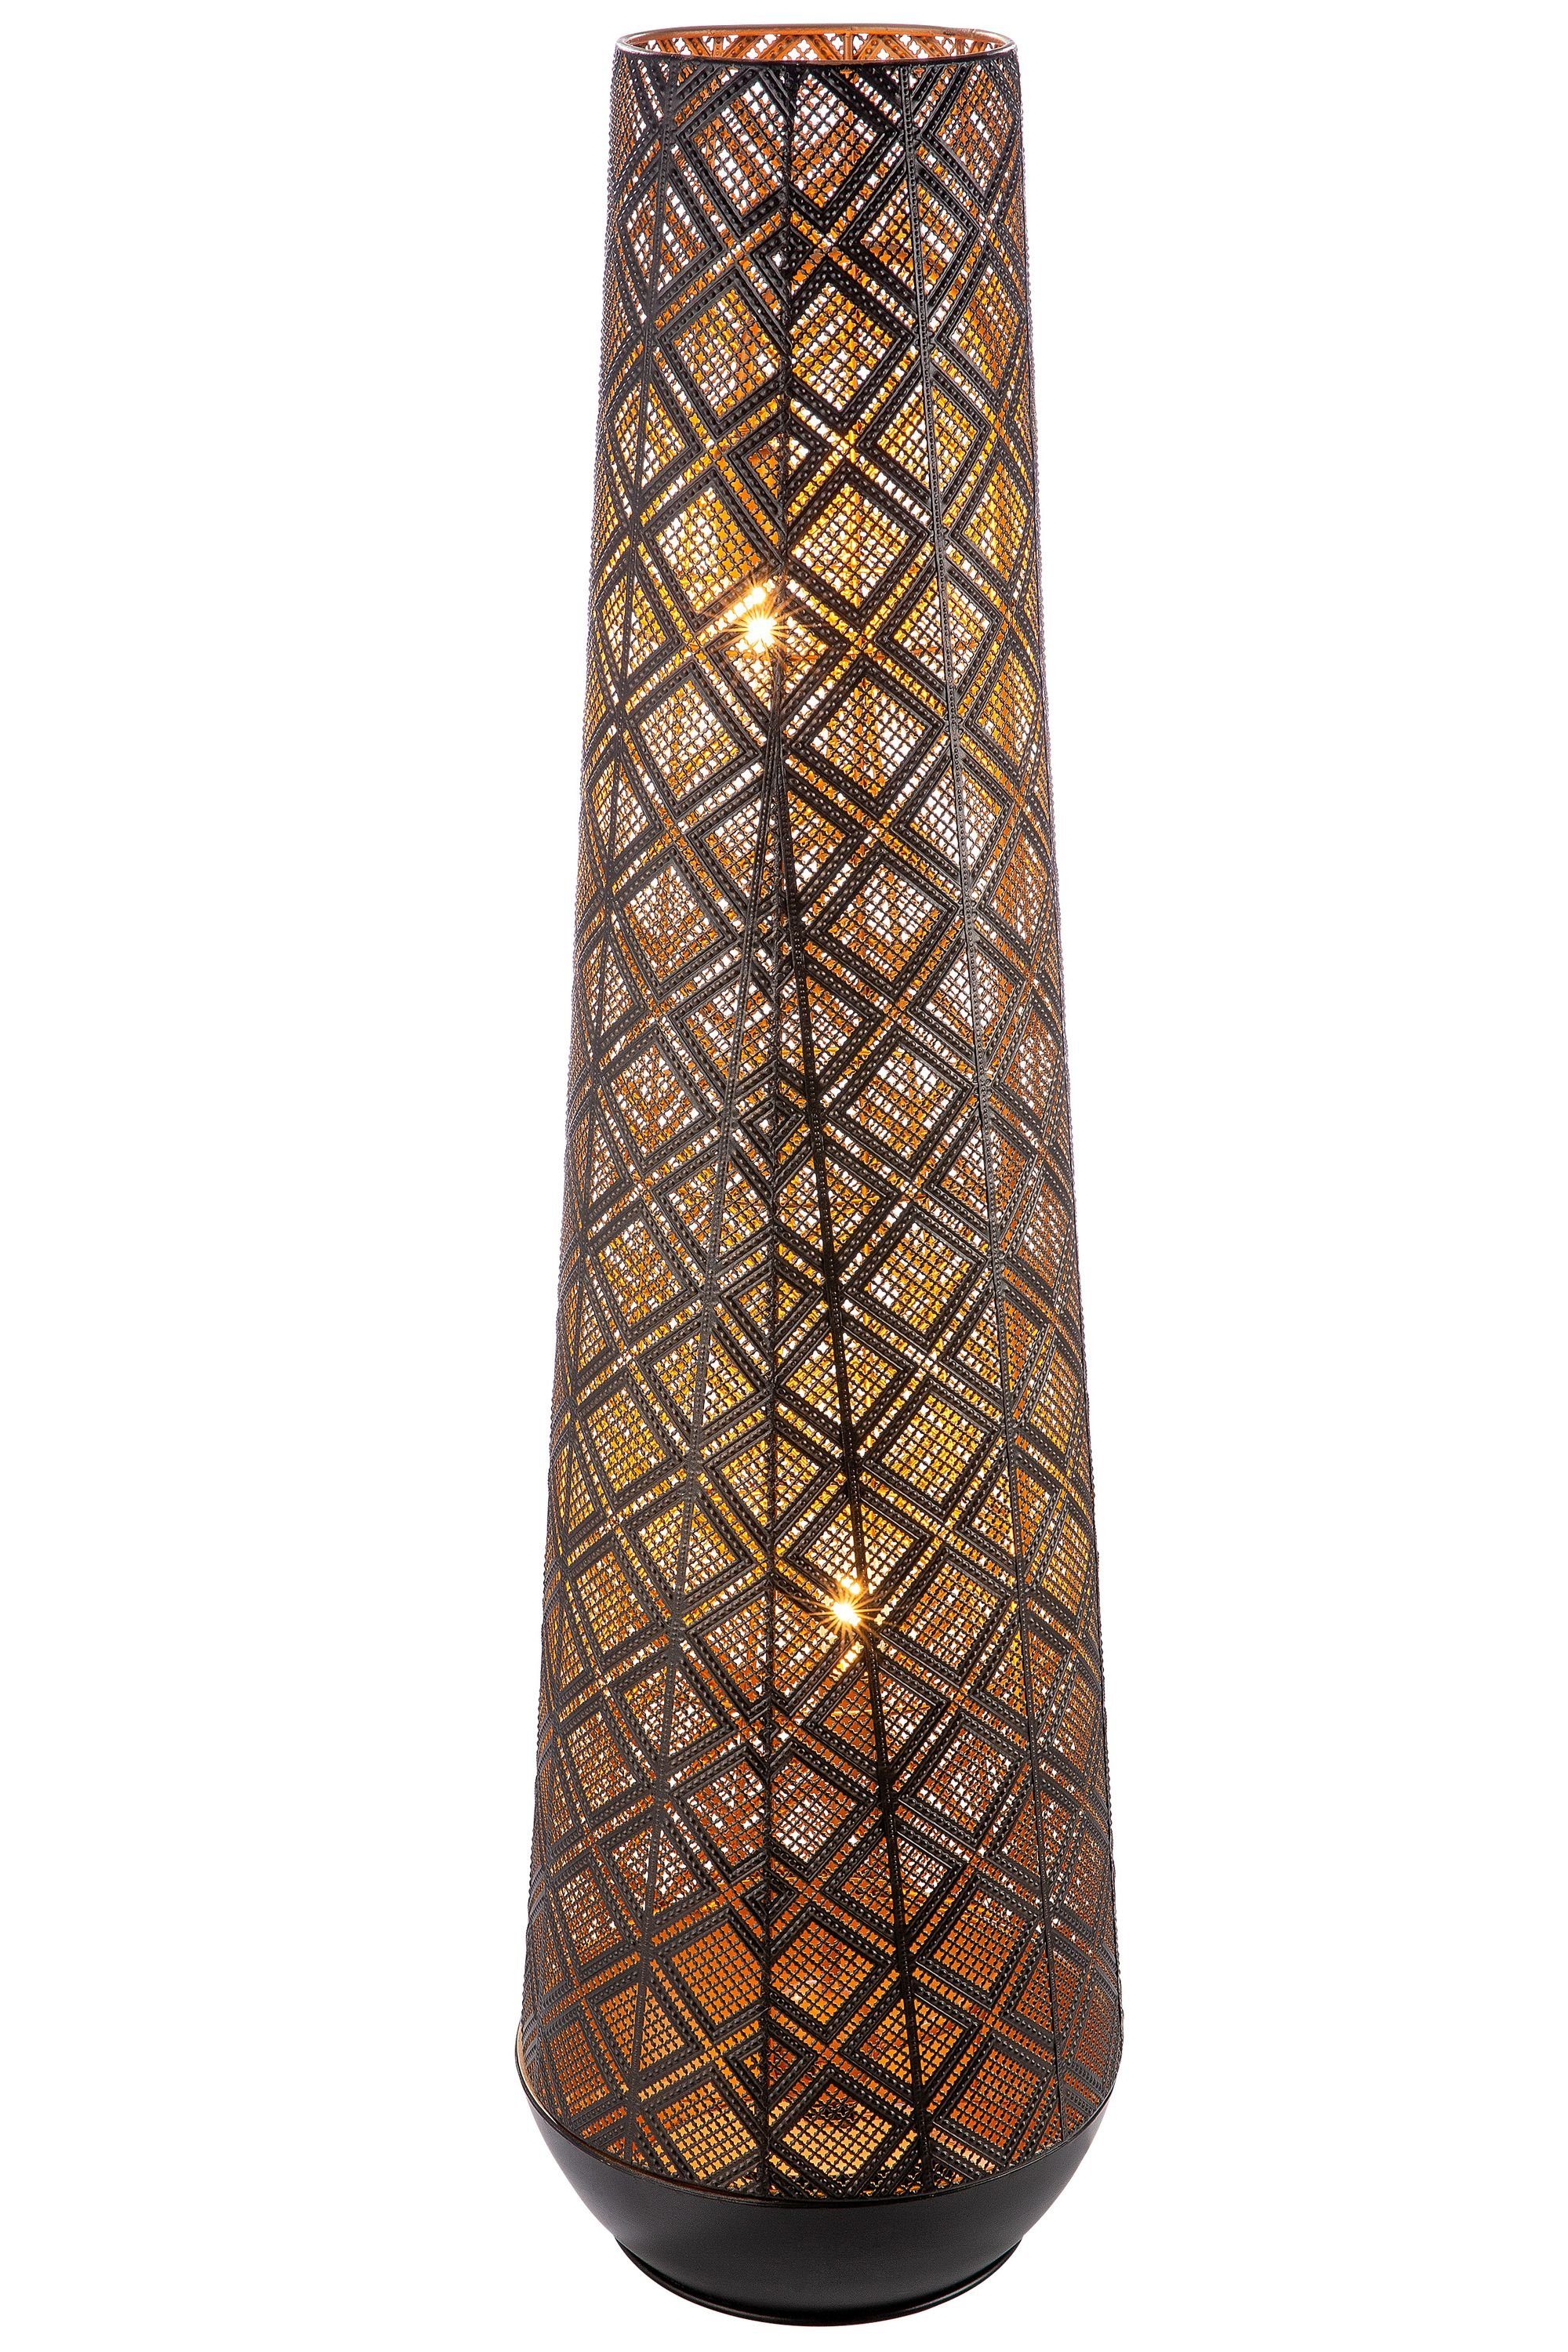 GILDE Tischleuchte GILDE Bodenlampe Almazar - schwarz - H. 108cm x D. 30,5cm